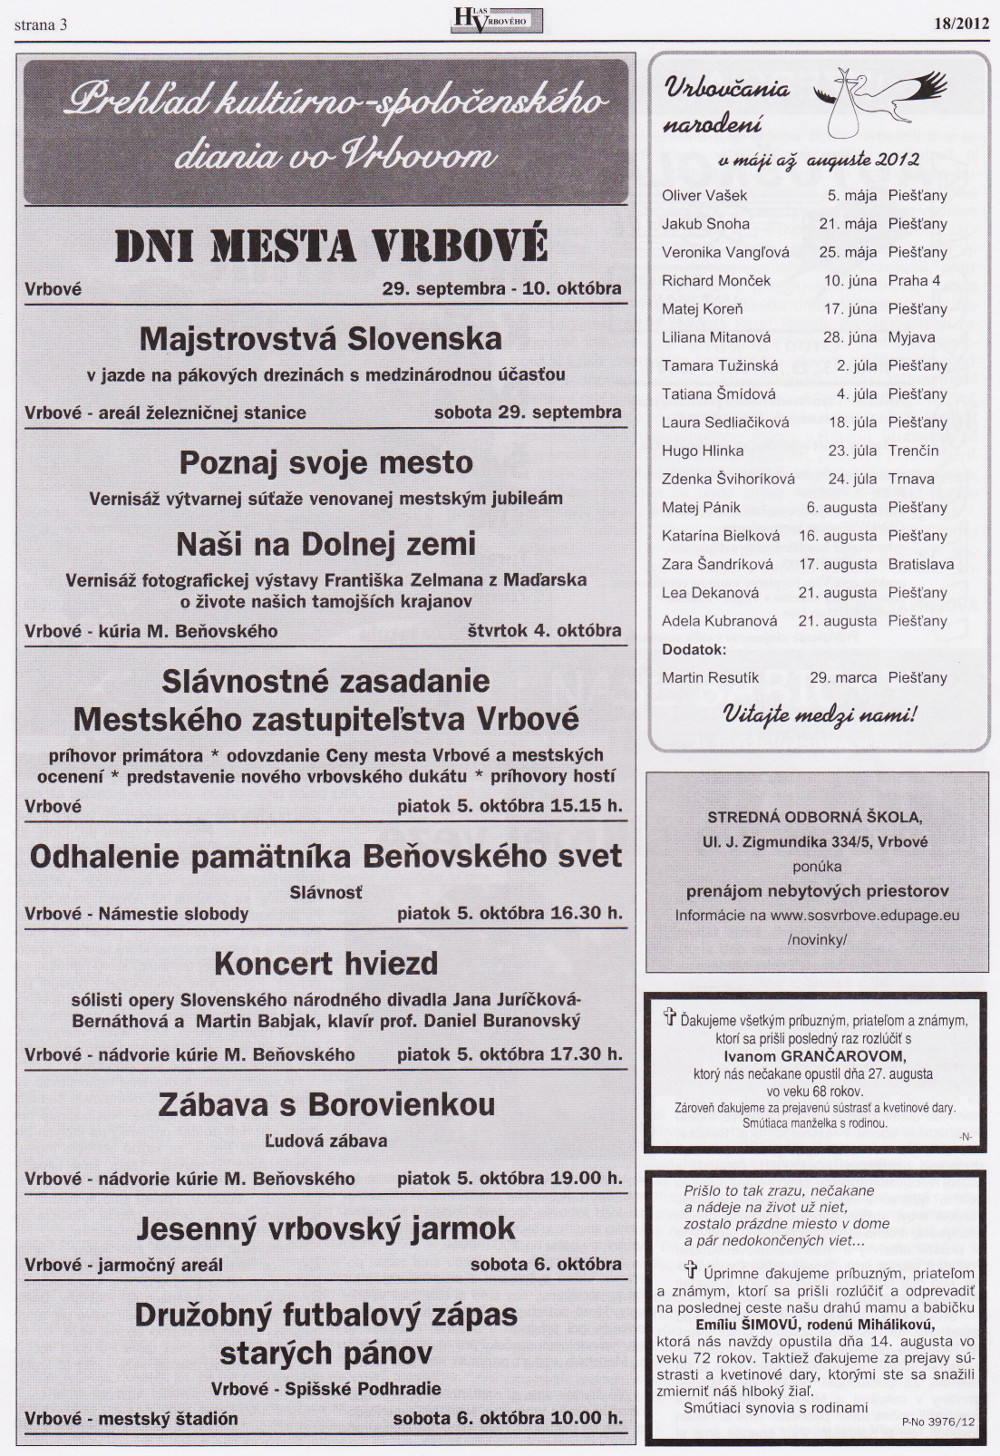 Hlas Vrbového 18/2012, strana 3